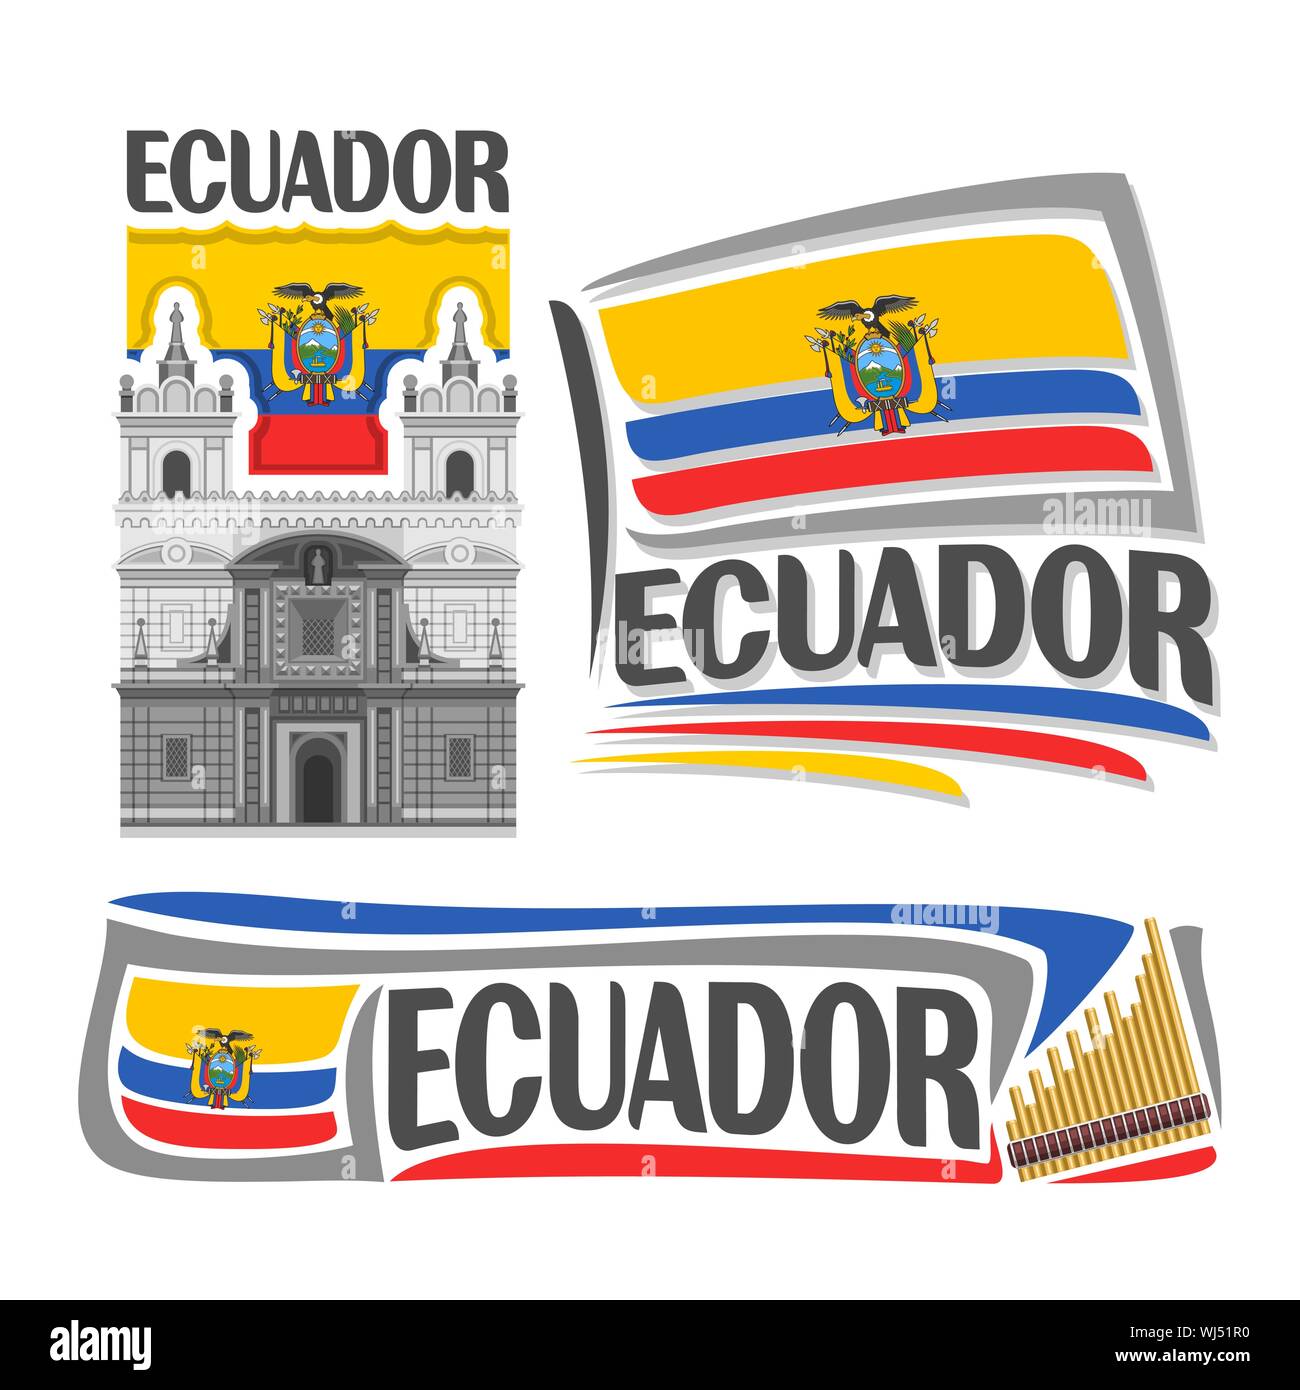 Il logo del vettore per l'Ecuador, 3 isolato immagini: chiesa di San Francesco a Quito il stato nazionale Bandiera ecuadoriana e musica rondador. Illustrazione Vettoriale